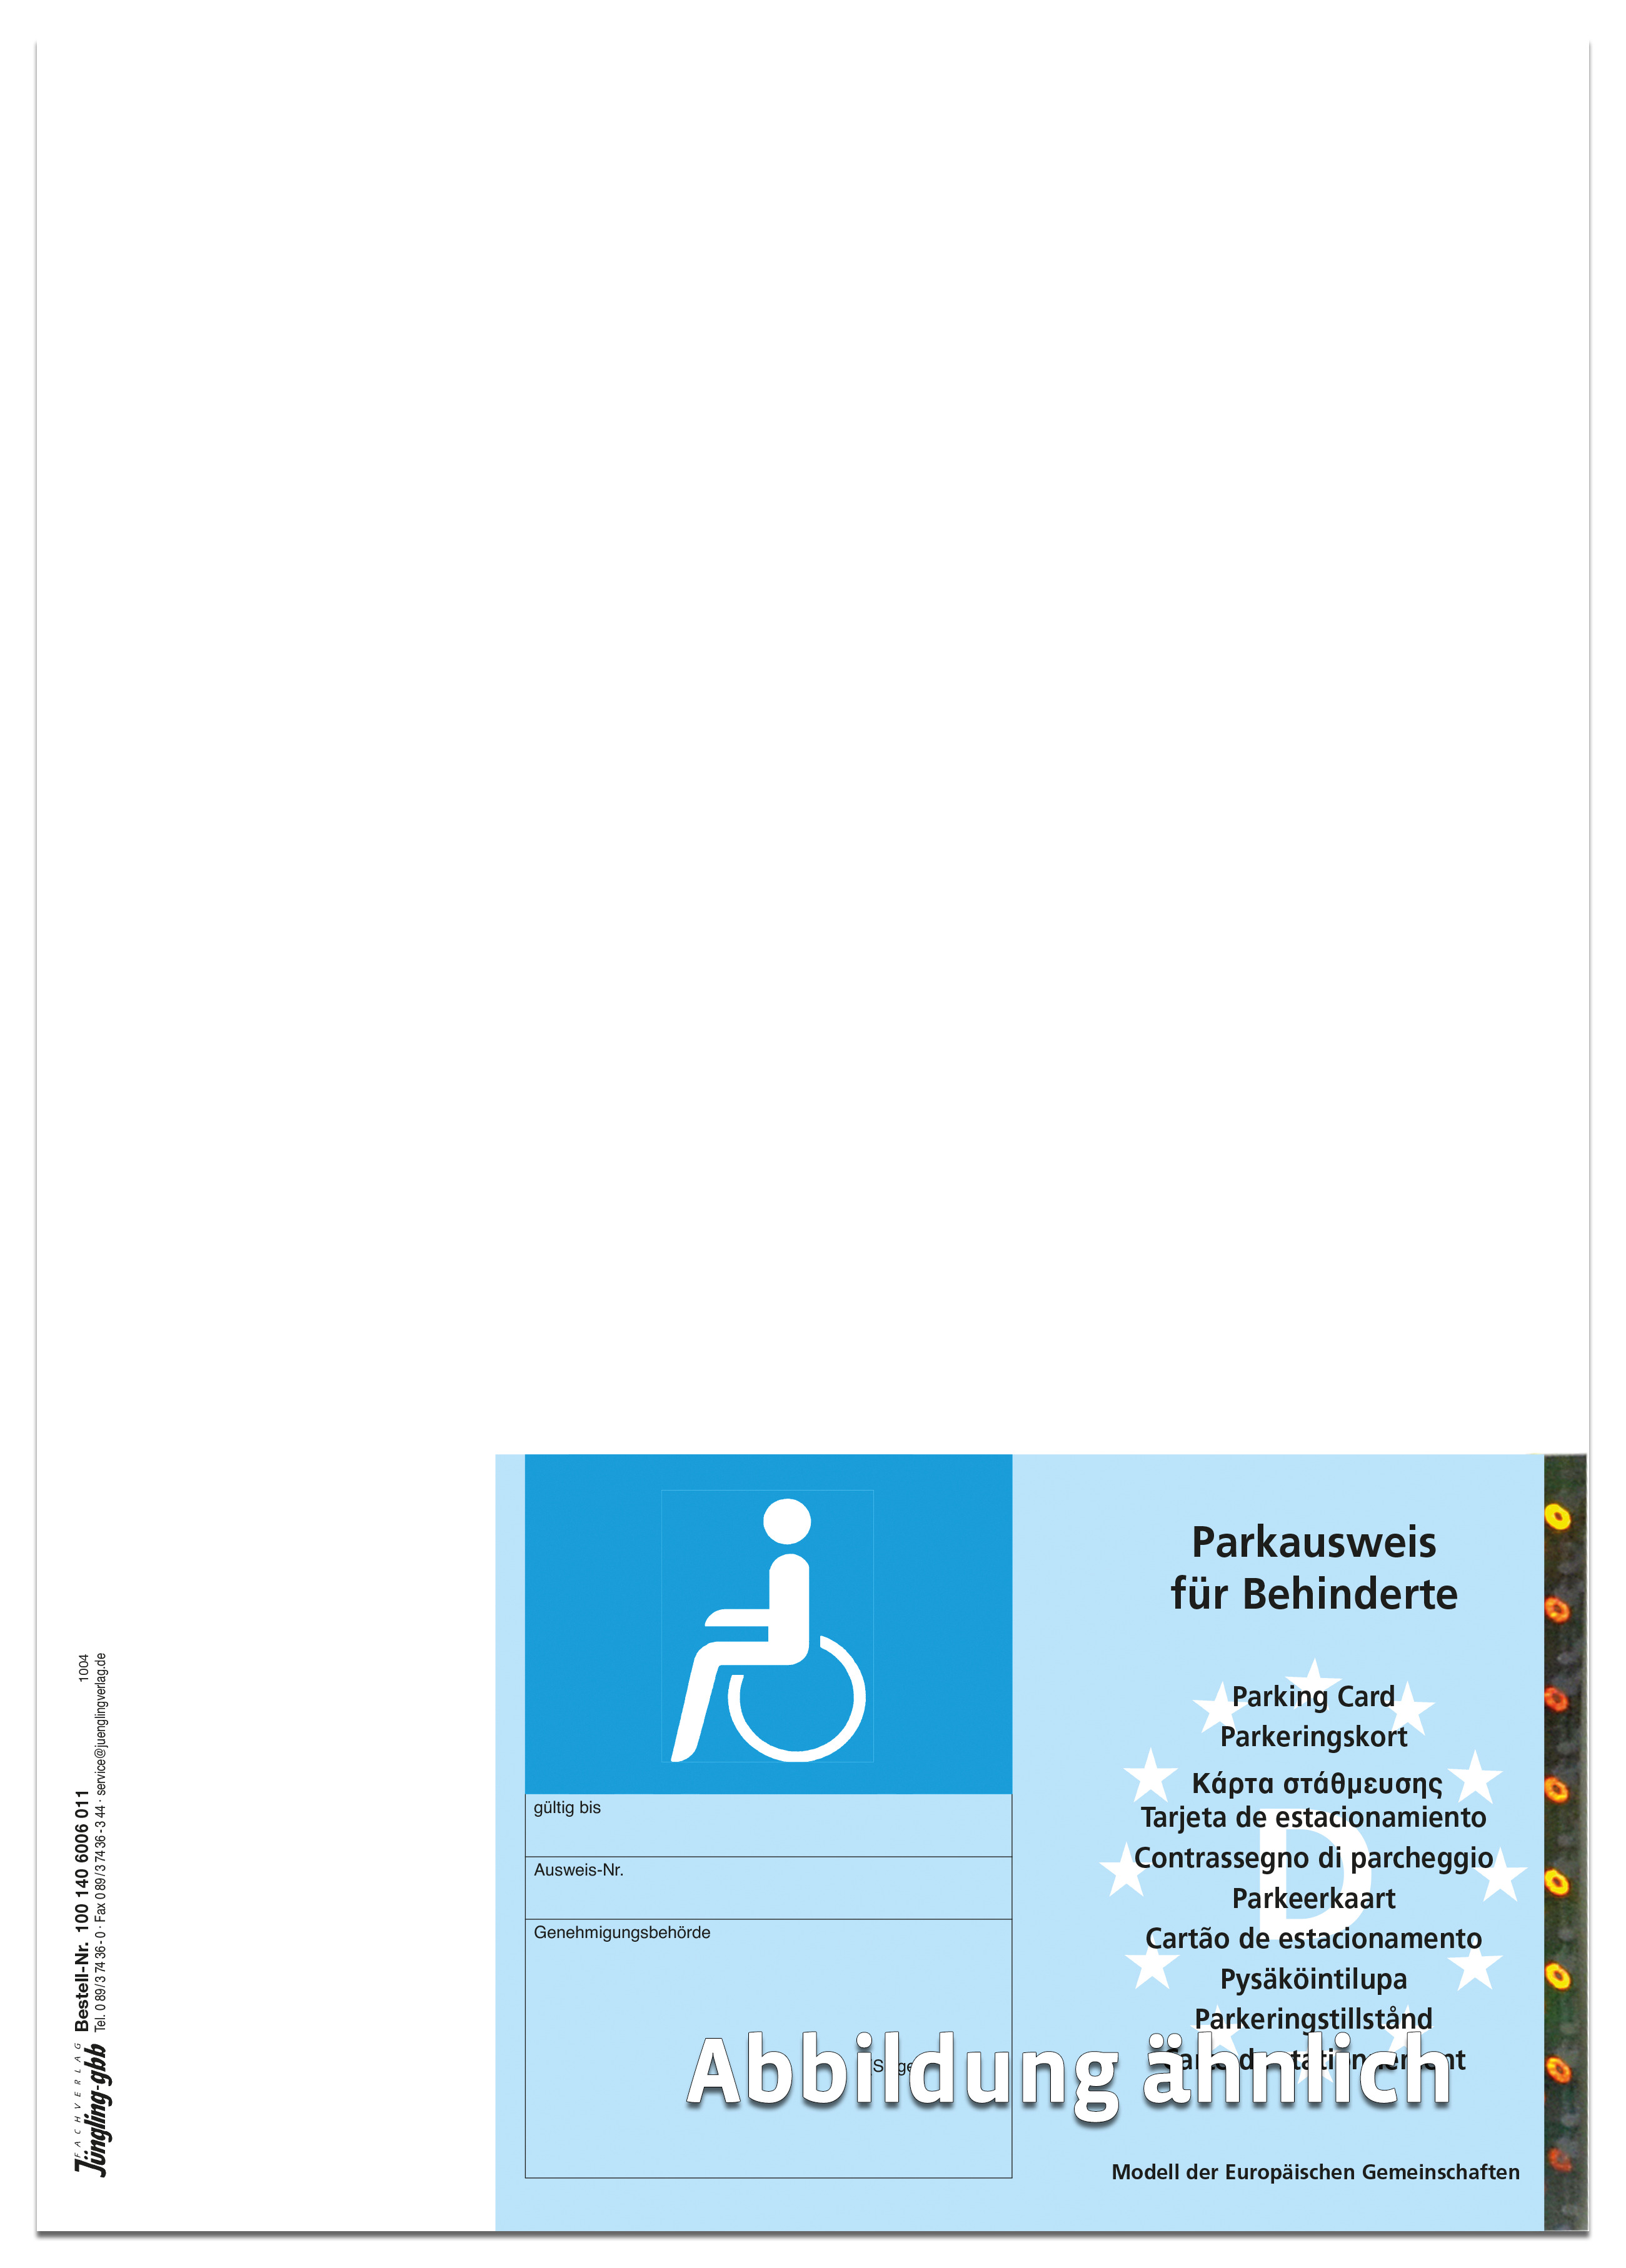 Parkausweis für Schwerbehinderte, EU-Modell, mit abtrennbarem Parkausweis,  Hologramm, blau, A4